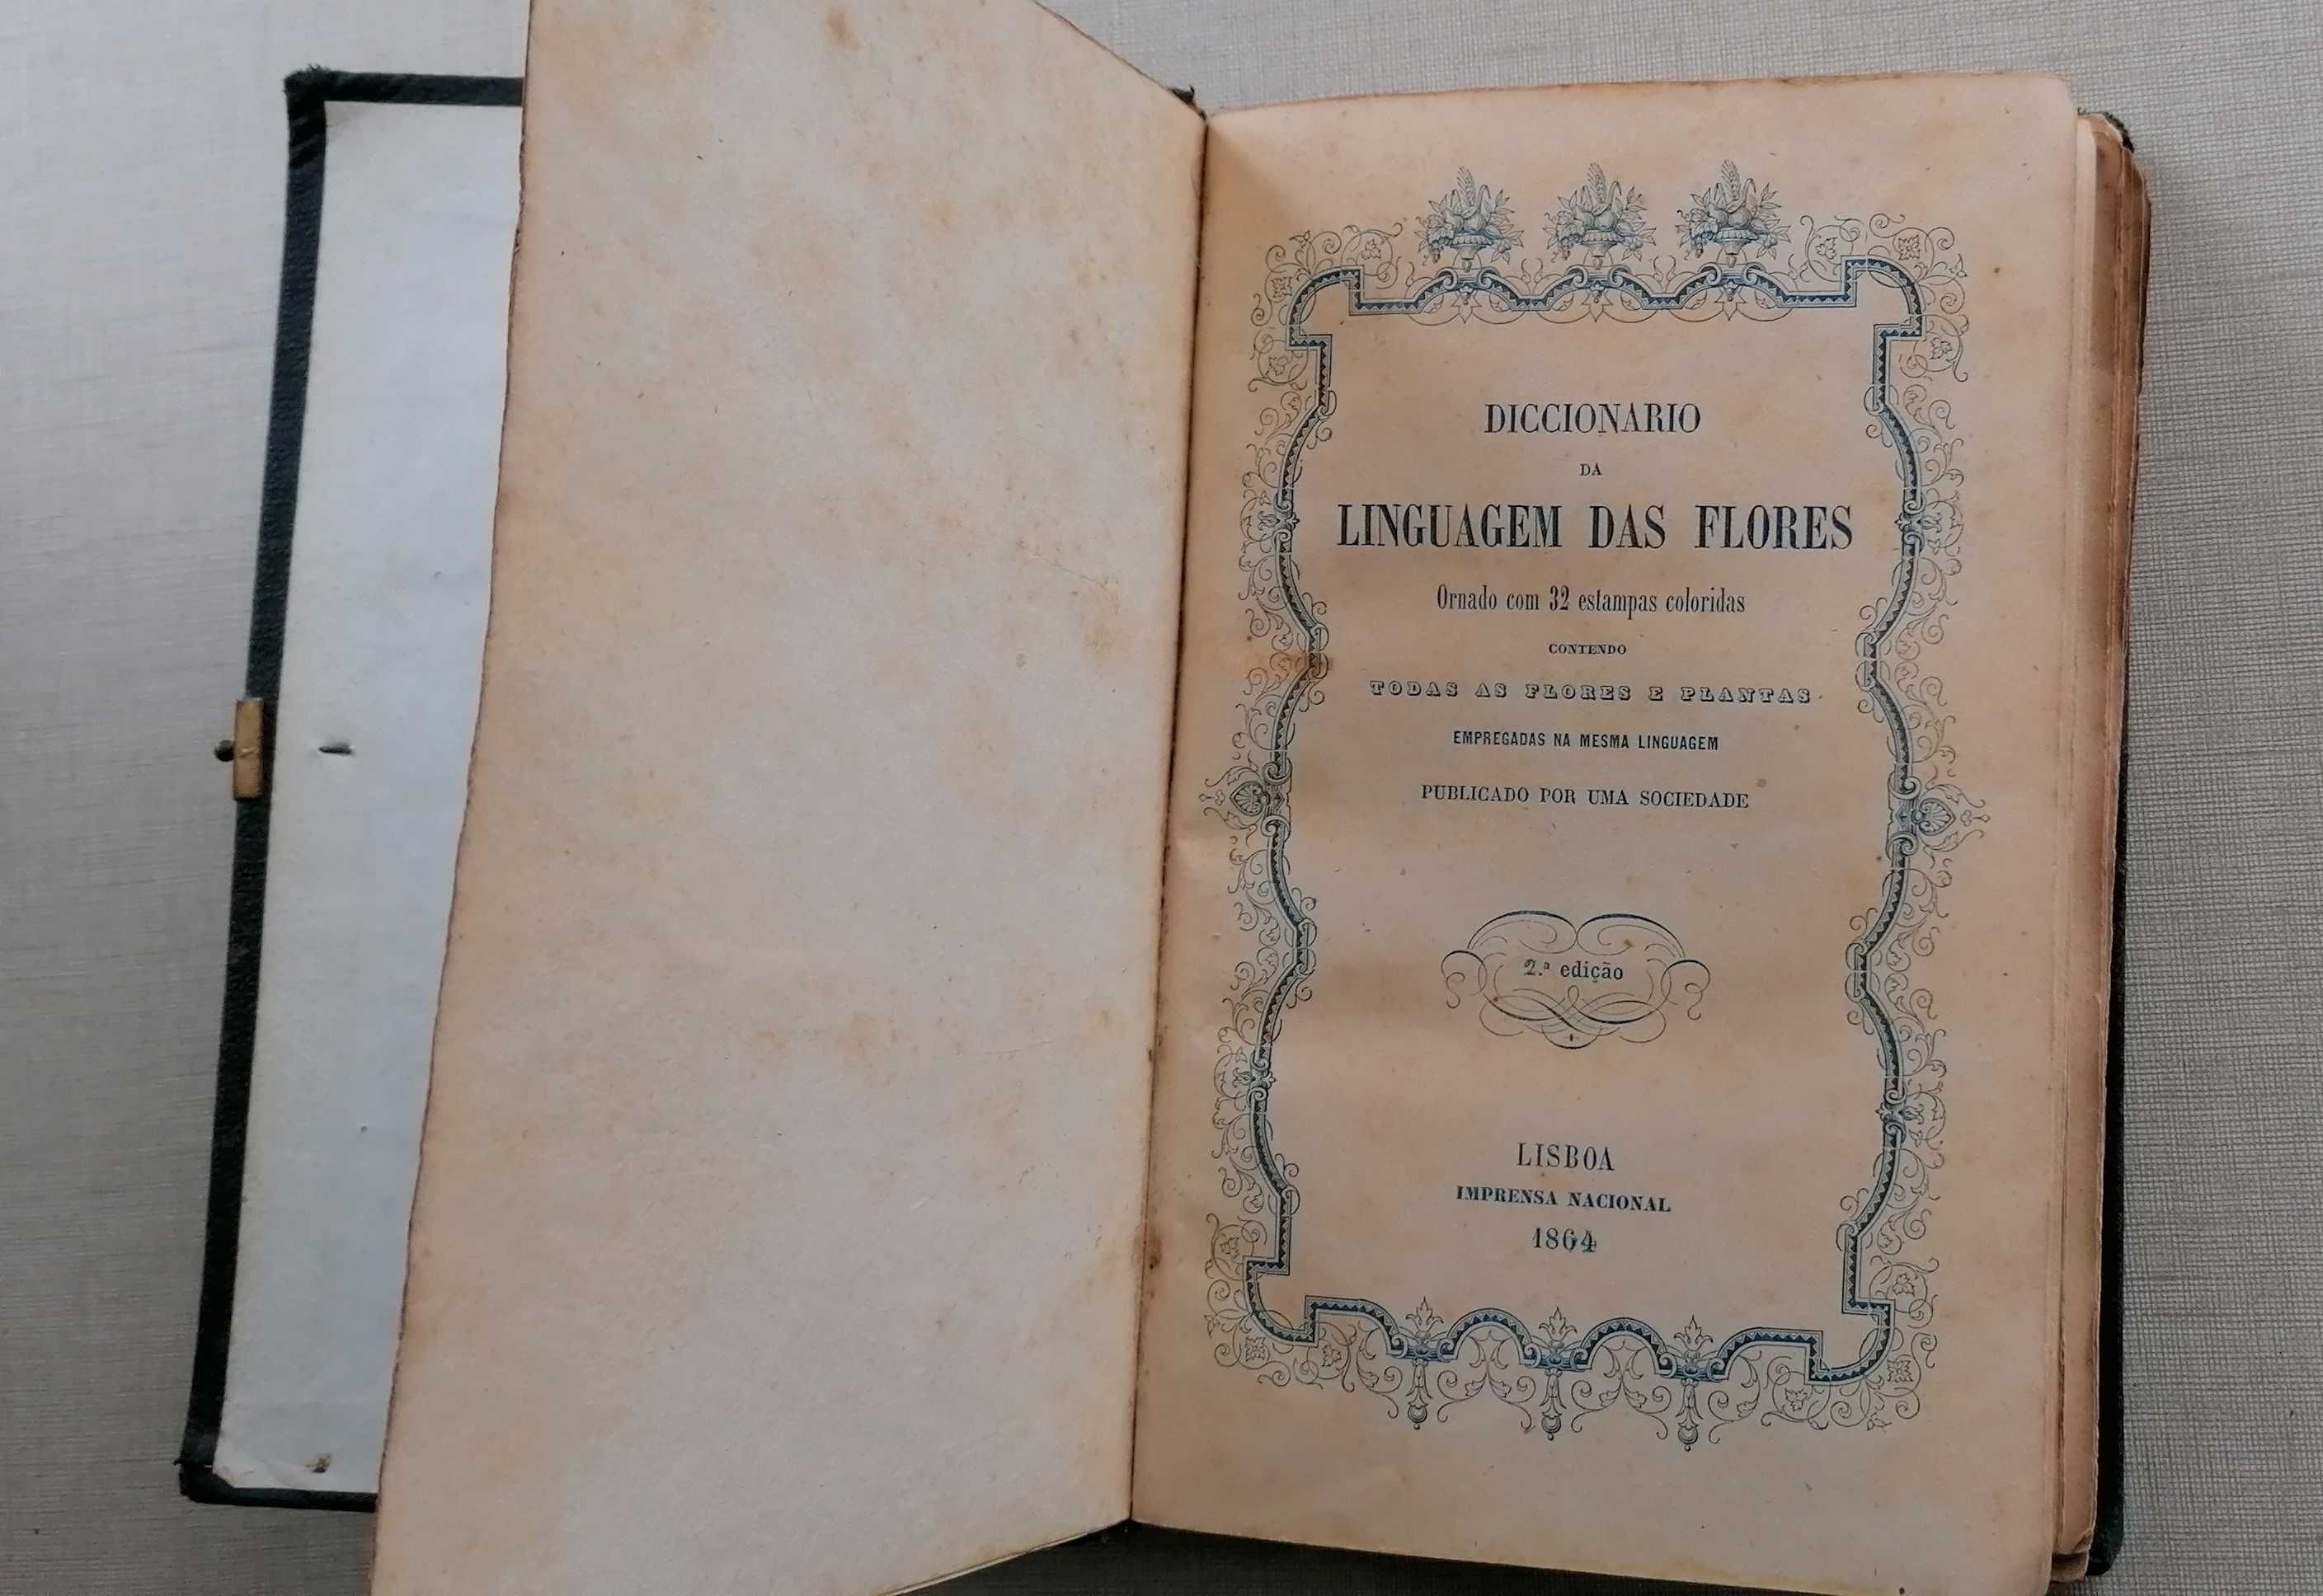 Diccionario da linguagem das flores, imprensa nacional, 1864